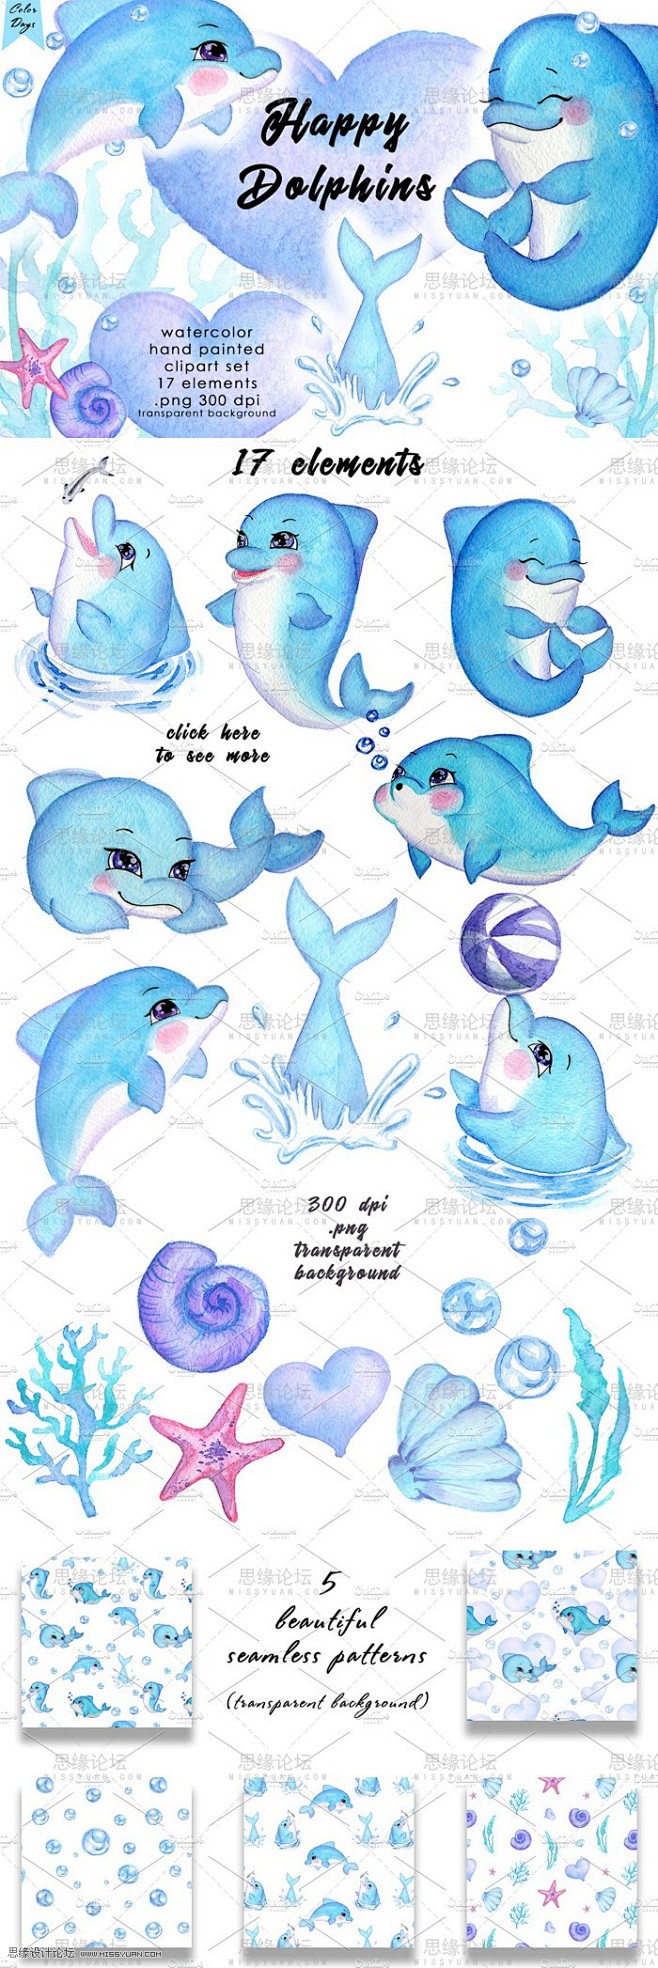 【VIP素材】(水彩画,可爱小海豚,海星...